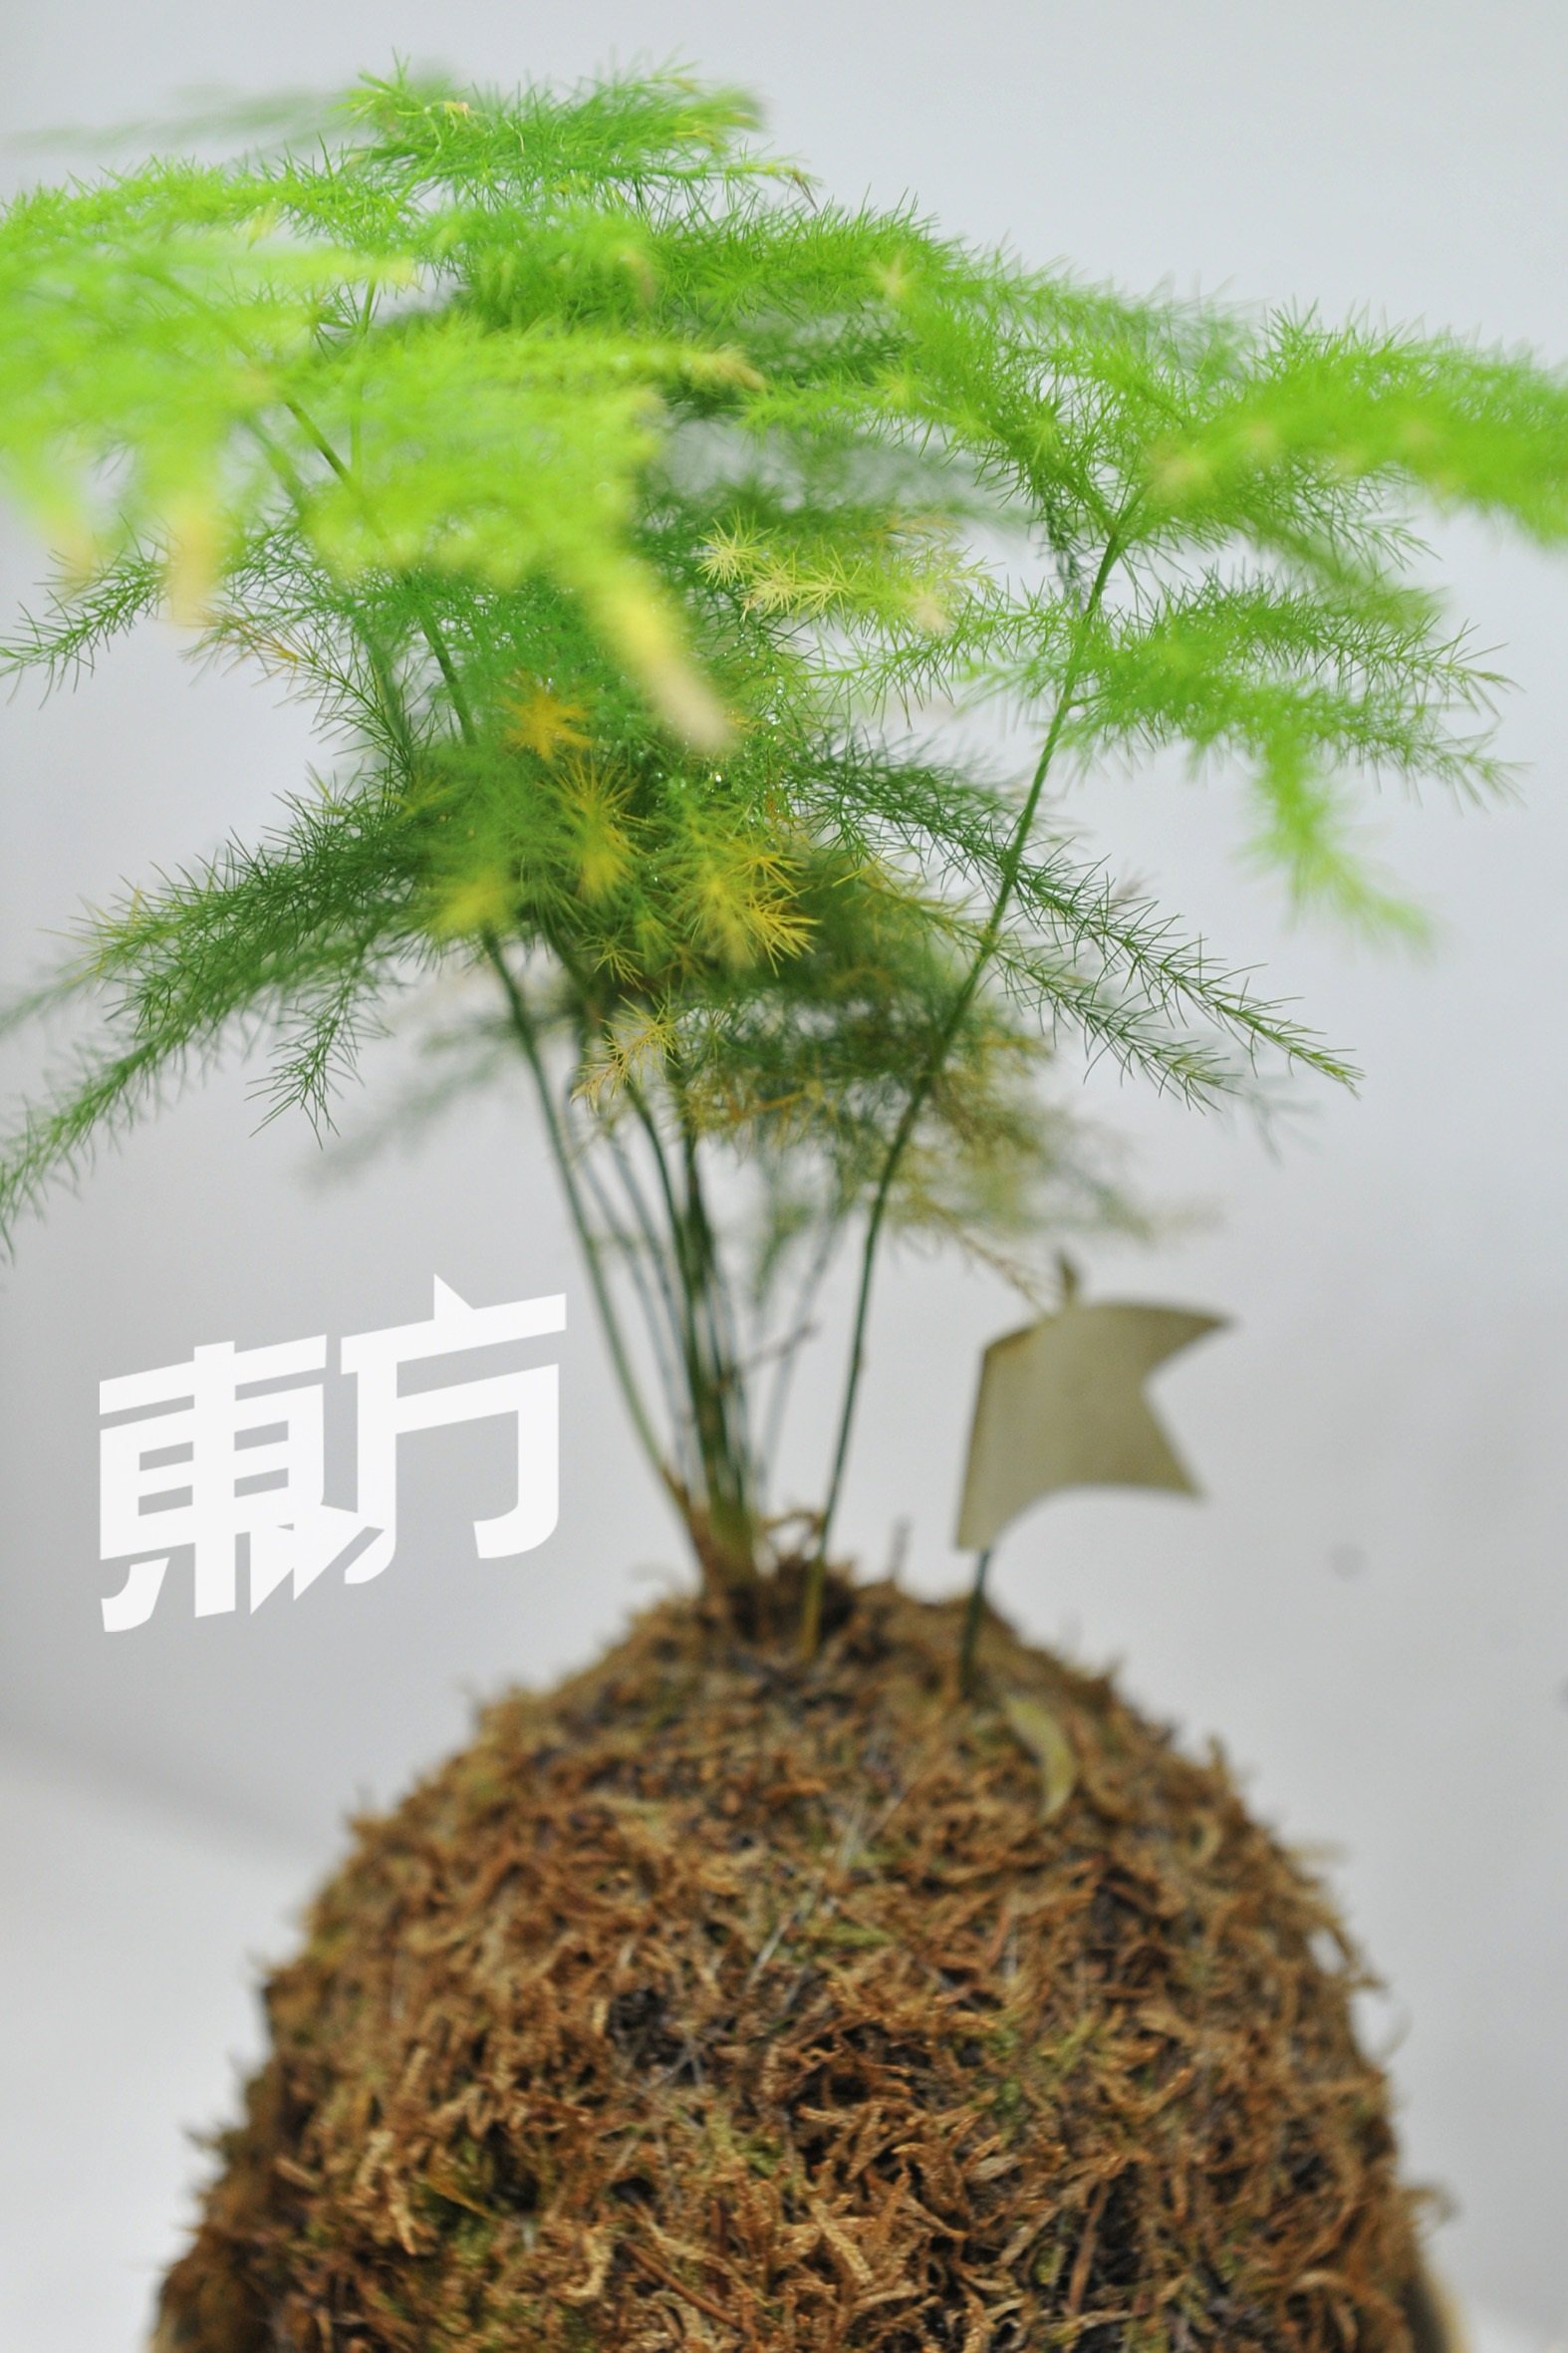 “他曼”的商标设计，灵感来自刘俊宝最喜欢的文竹和苔玉。苔玉即是苔藓球，是植物也是种植方法的一种，源自日本的江户时代，有著极高的观赏价值。